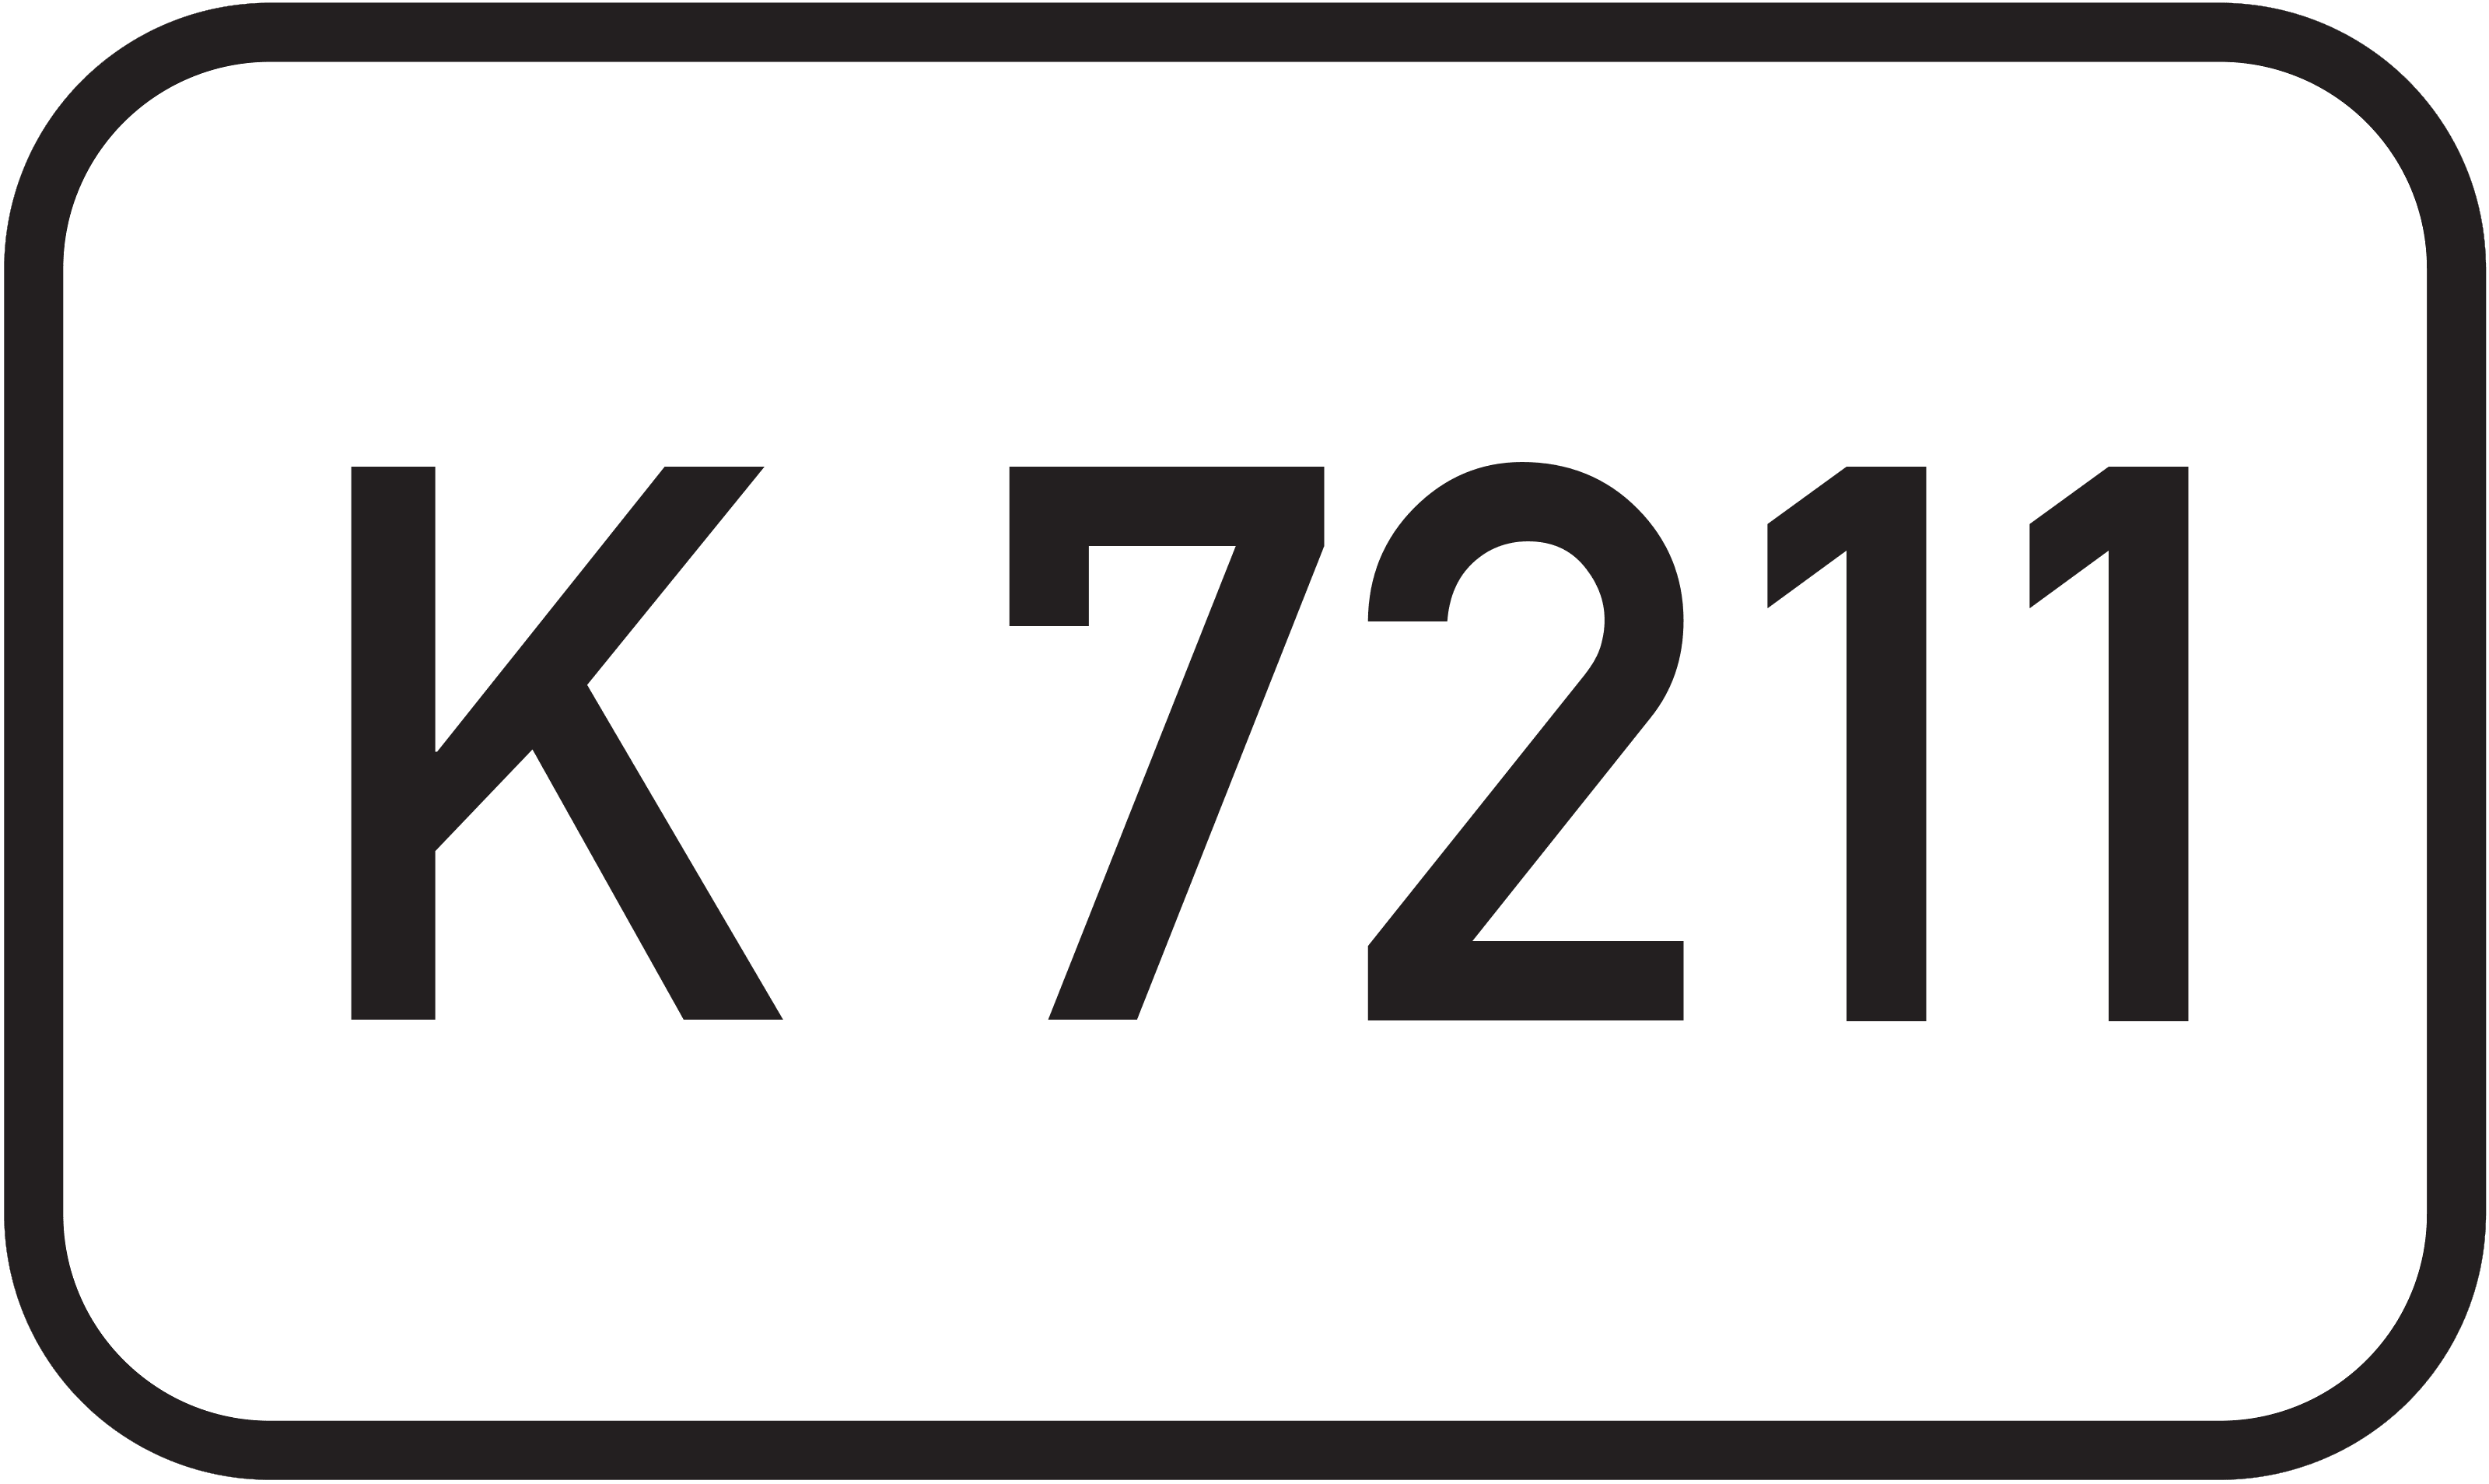 Kreisstraße K 7211